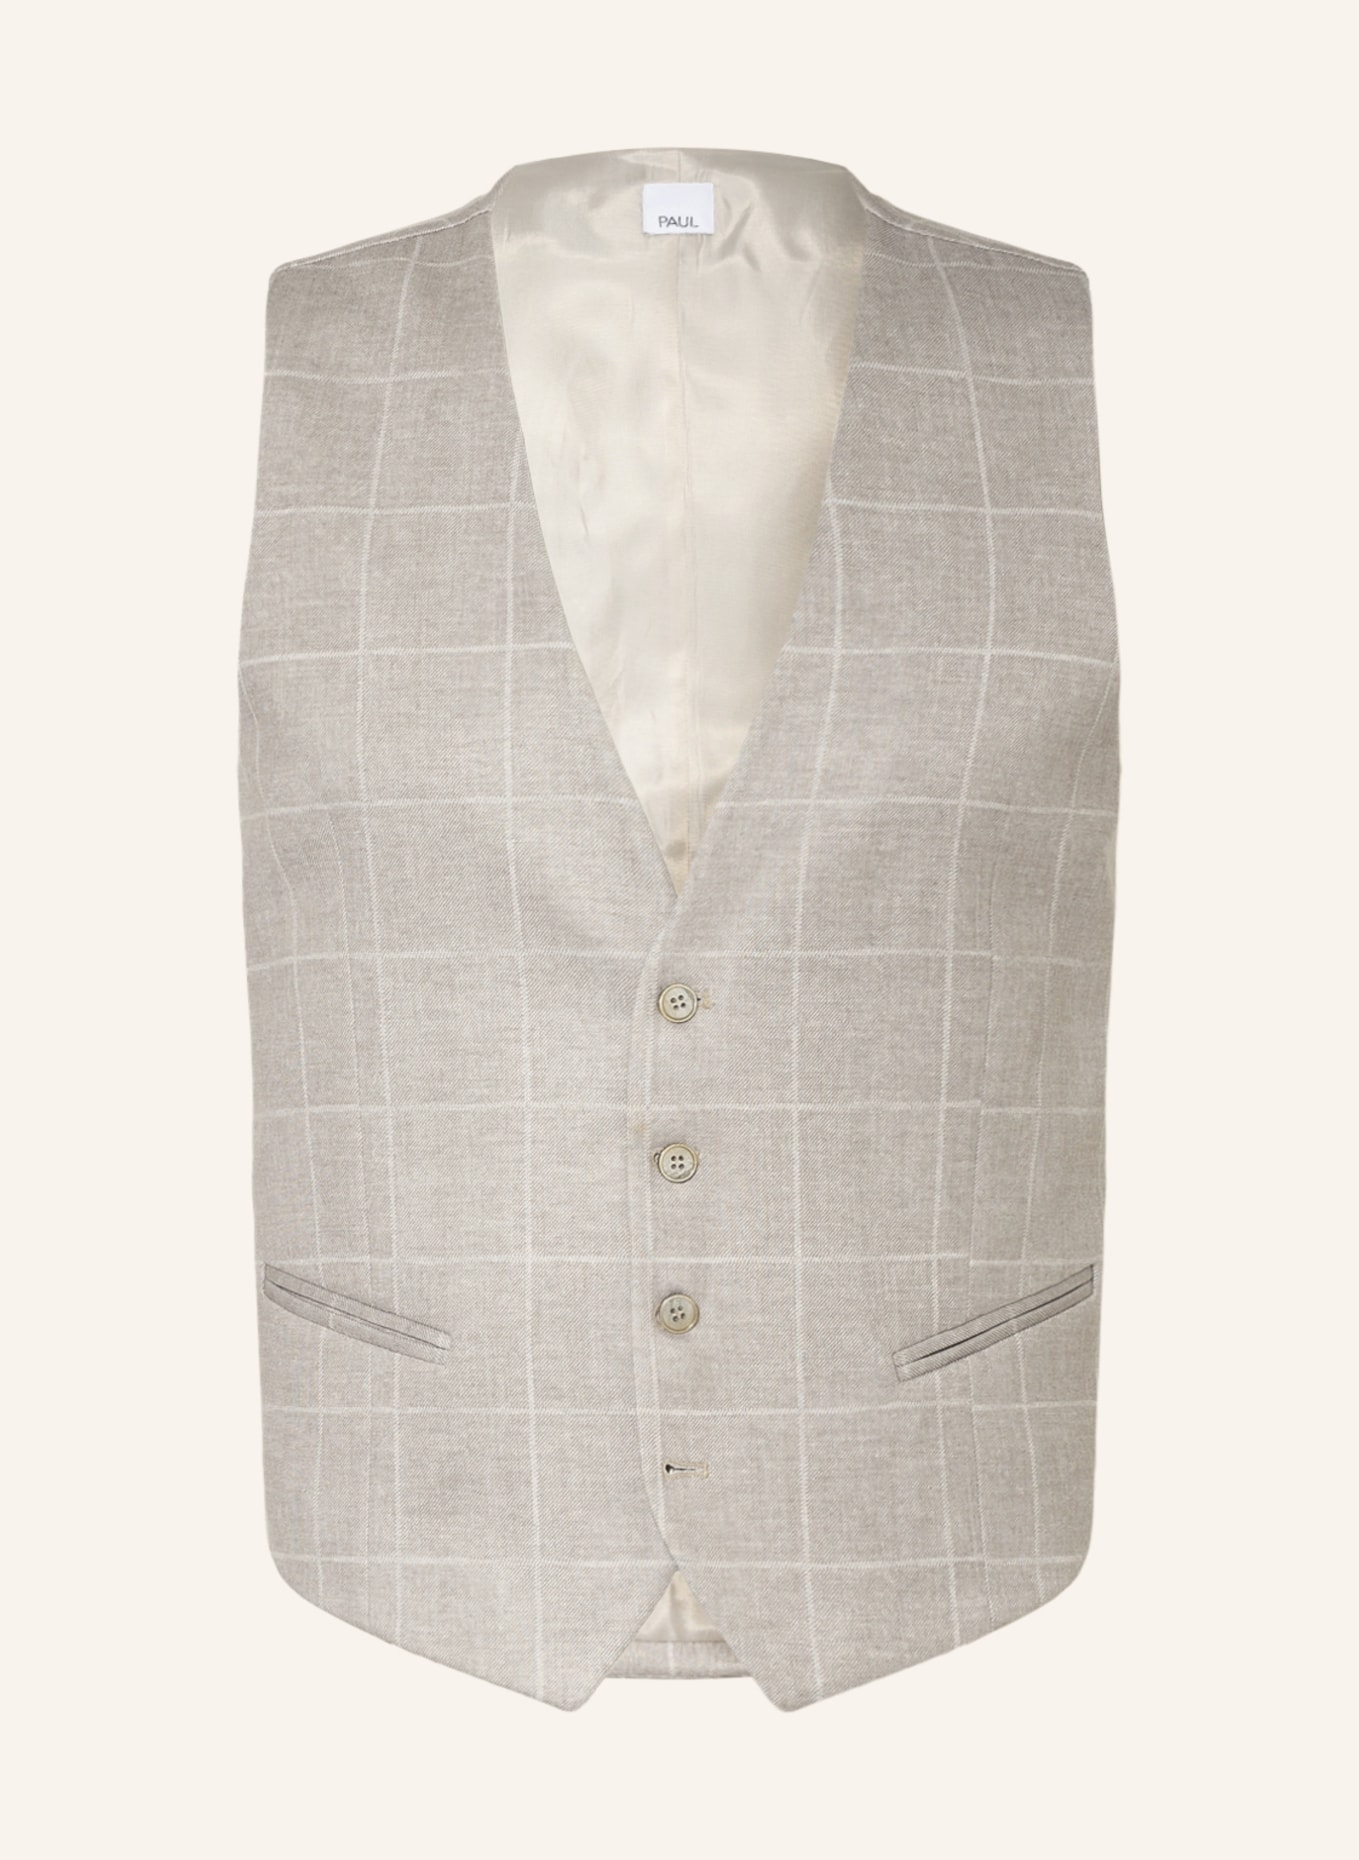 PAUL Suit vest extra slim fit, Color: BEIGE (Image 1)